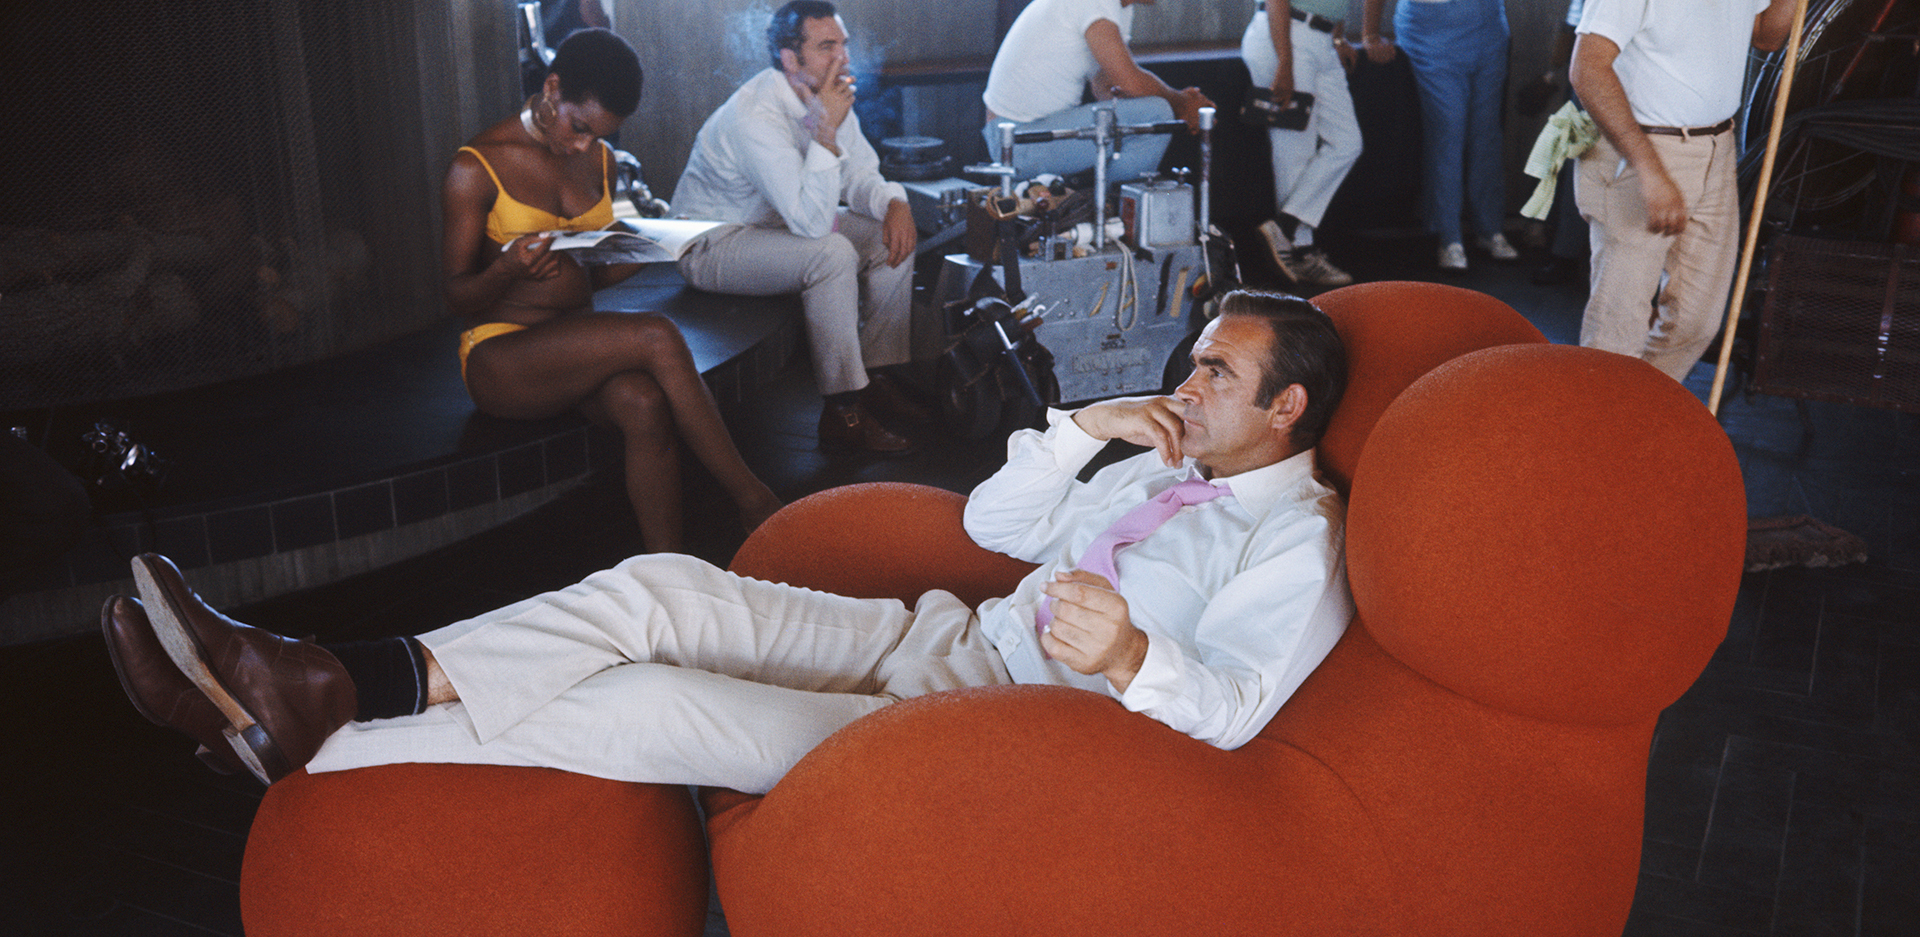 Ο Σον Κόνερι στα γυρίσματα της ταινίας «James Bond - Diamonds Are Forever» το 1971 καθισμένος σε μια πολυθρόνα UP-5 Donna © Anwar Hussein/Getty Images